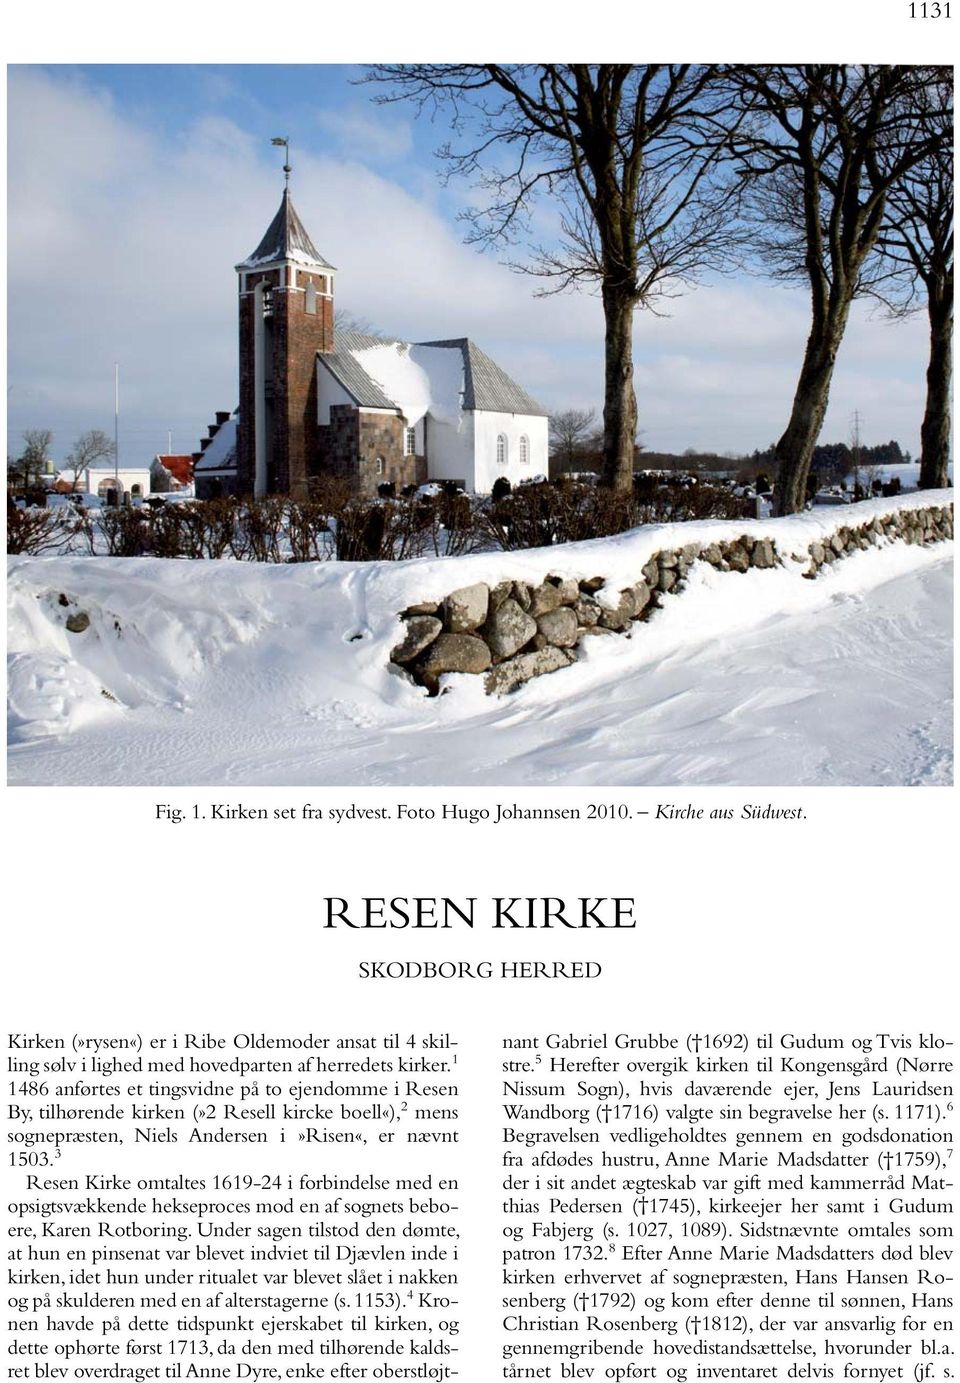 3 Resen Kirke omtaltes 1619-24 i forbindelse med en opsigtsvækkende hekseproces mod en af sognets beboere, Karen Rotboring.